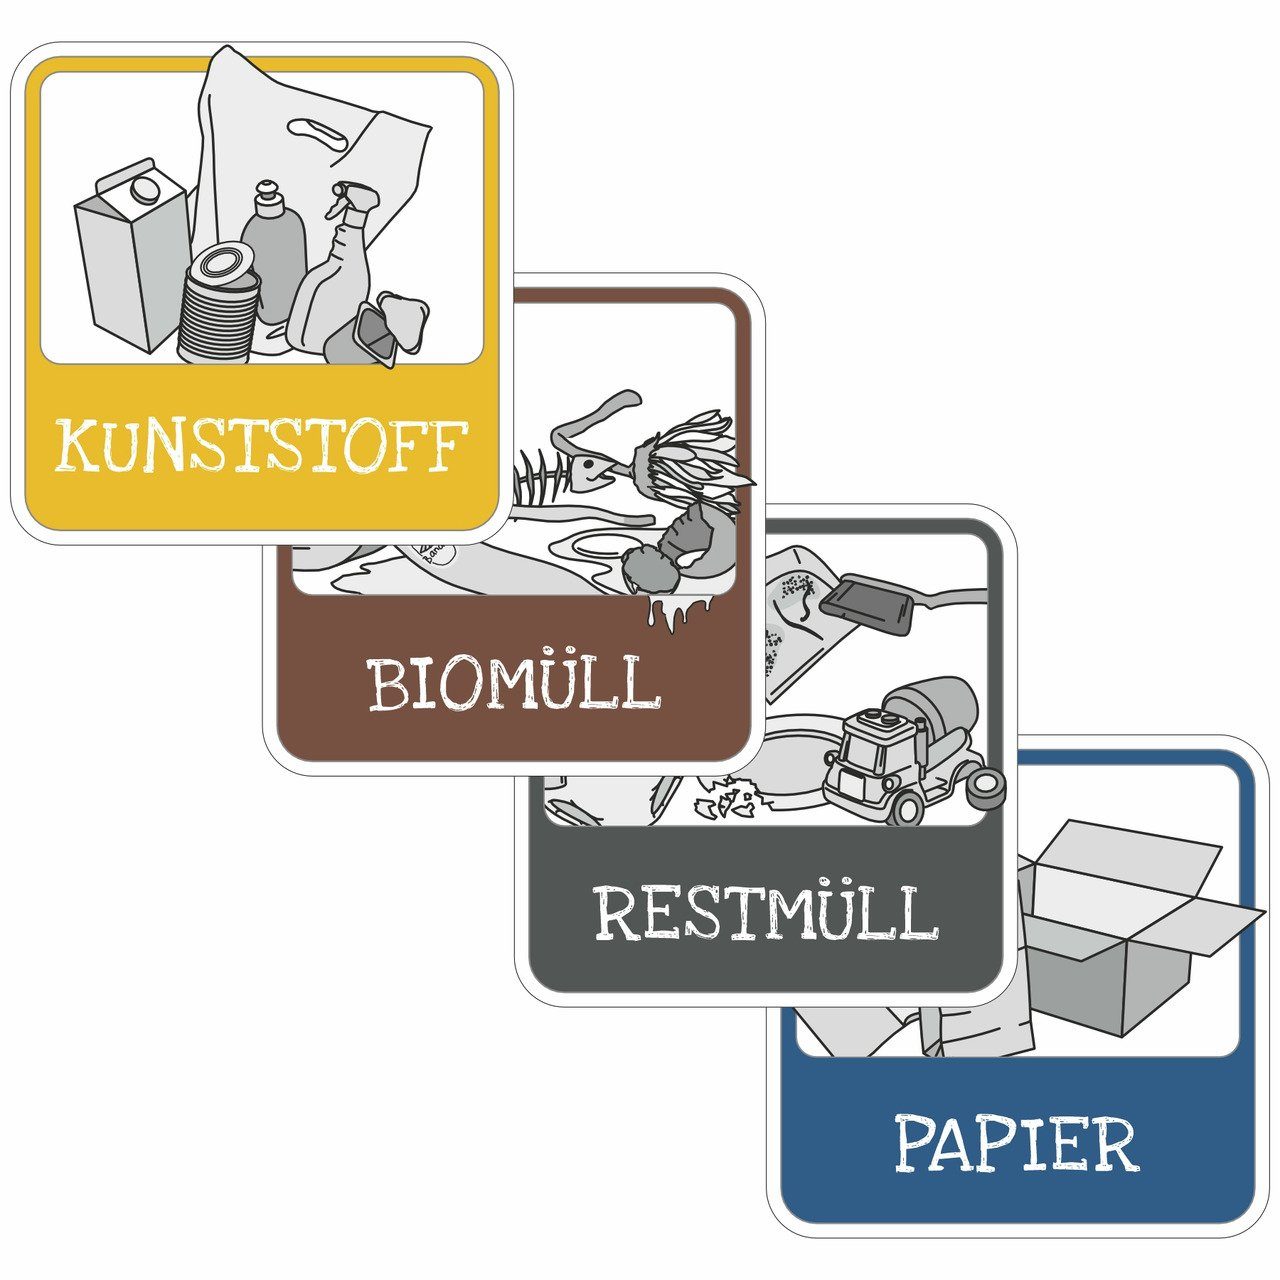 SafetyMarking Hinweisschild für Mülltrennung, (Aufkleber Set Mülltrennung  (4 Aufkleber) - PVC Folie, selbstklebend - 10,0 x 10,0 cm, eckig, Symbole:  Kunststoff, Papier, Bio- und Restmüll), Qualität made in Germany